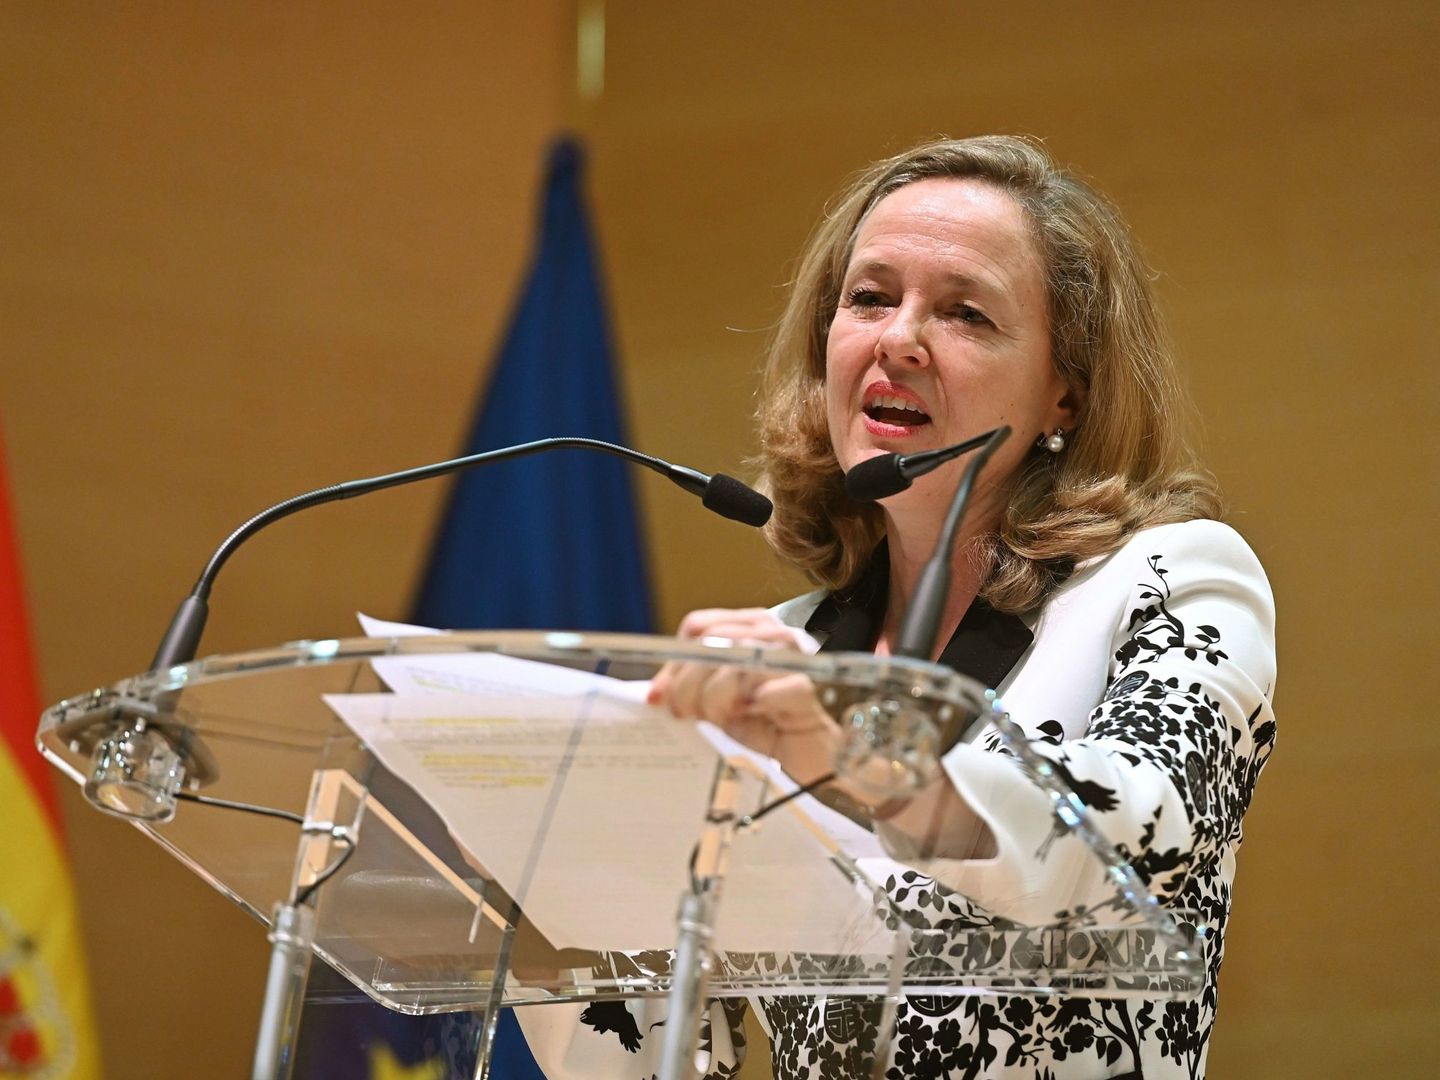 La ministra de Economía, Nadia Calviño, tras jurar su cargo. (EFE)